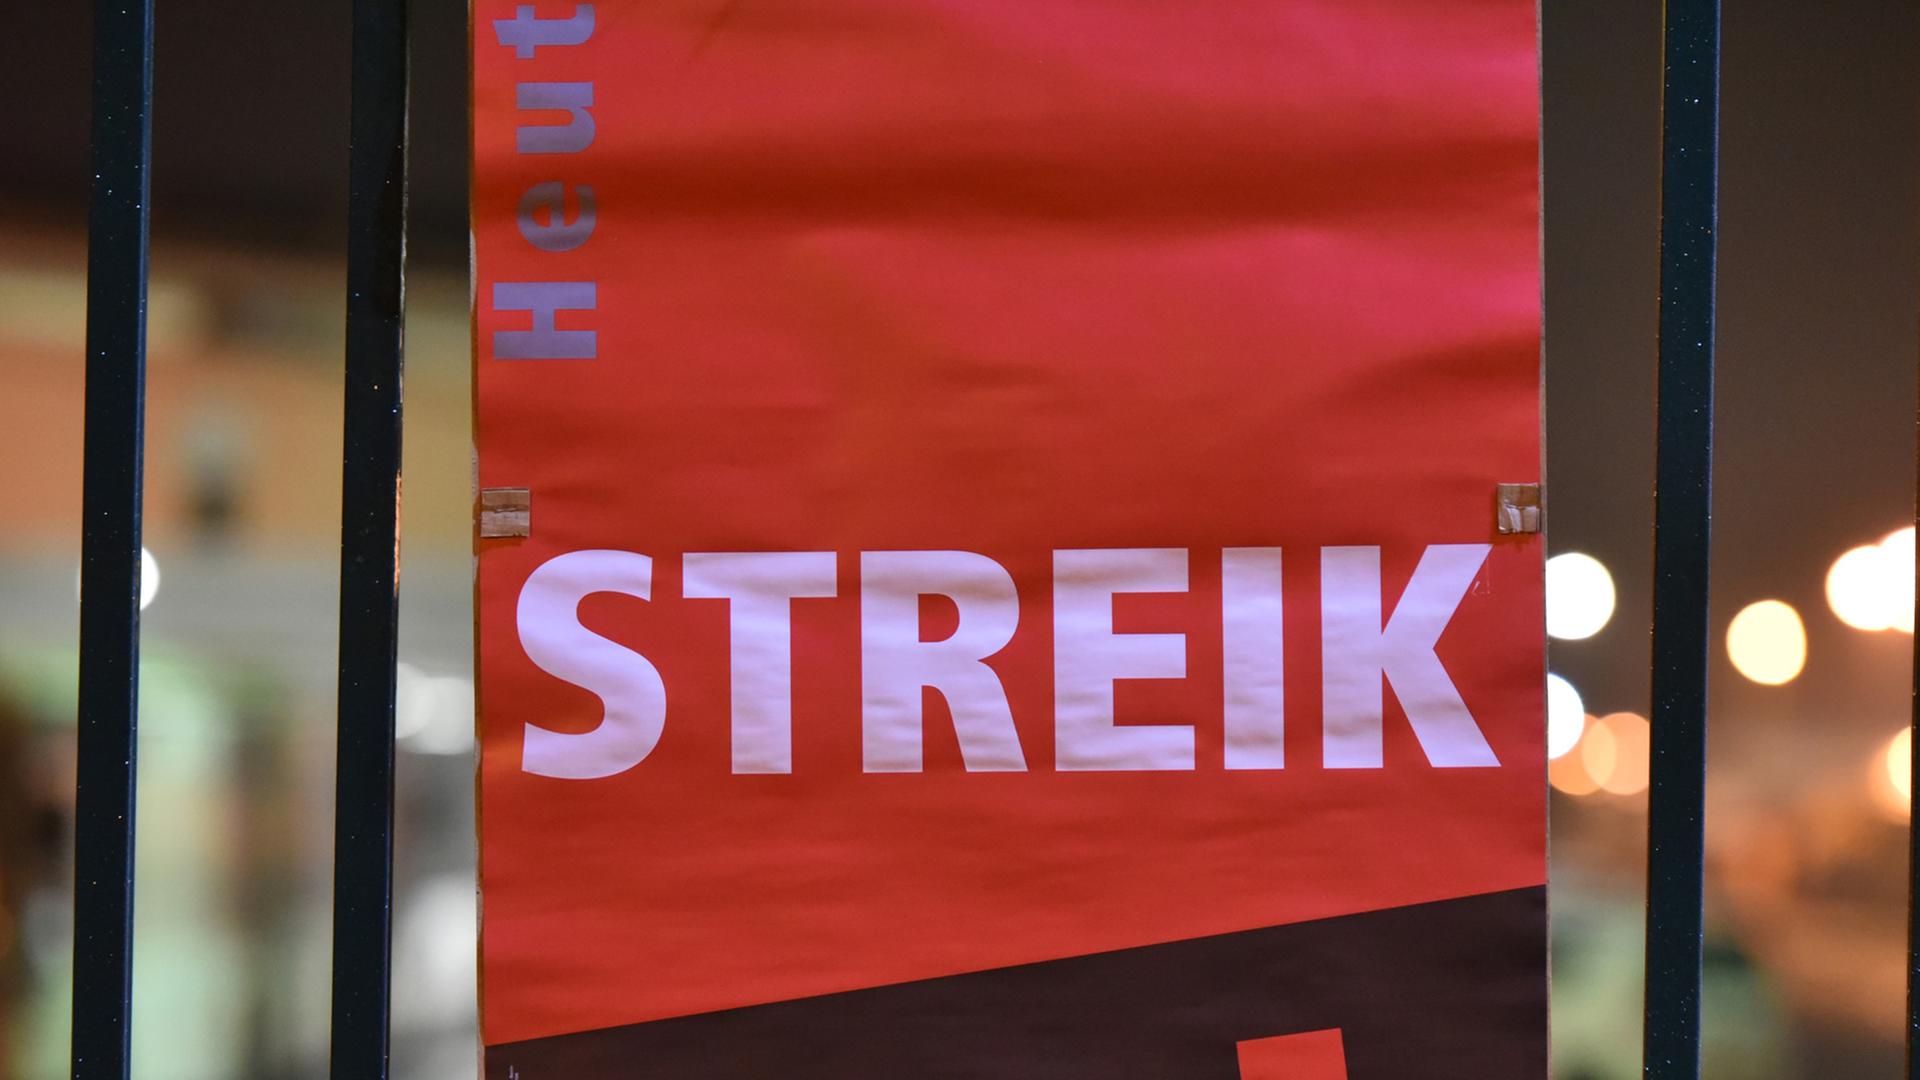 Ein Verdi-Plakat mit dem Text "Streik" hängt an einem Metallzaun.